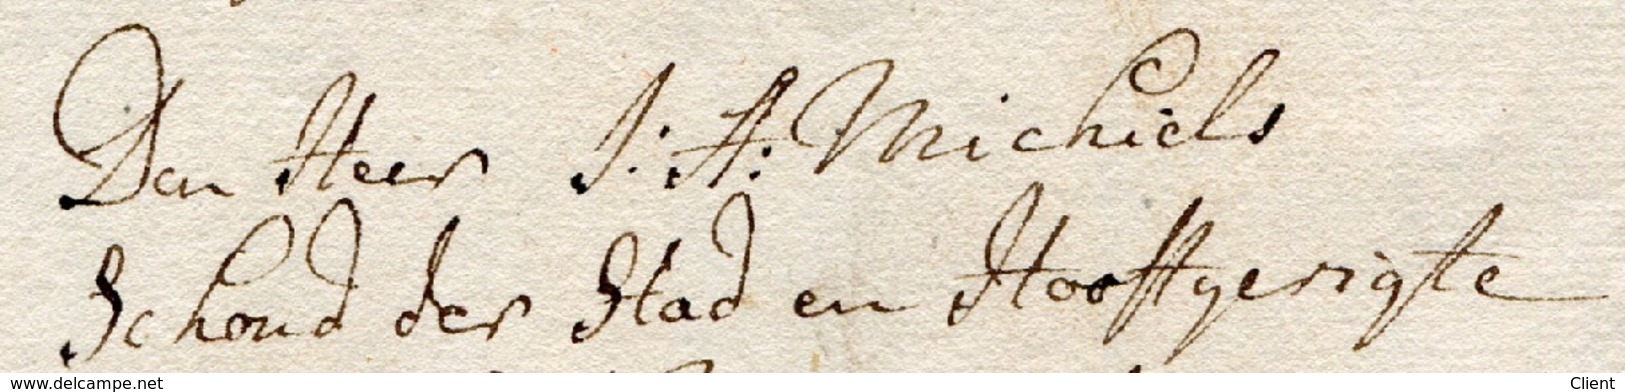 PAYS-BAS - Brief nach Burmond 1794 - von G. Poell für den Edelmann A. Michiels